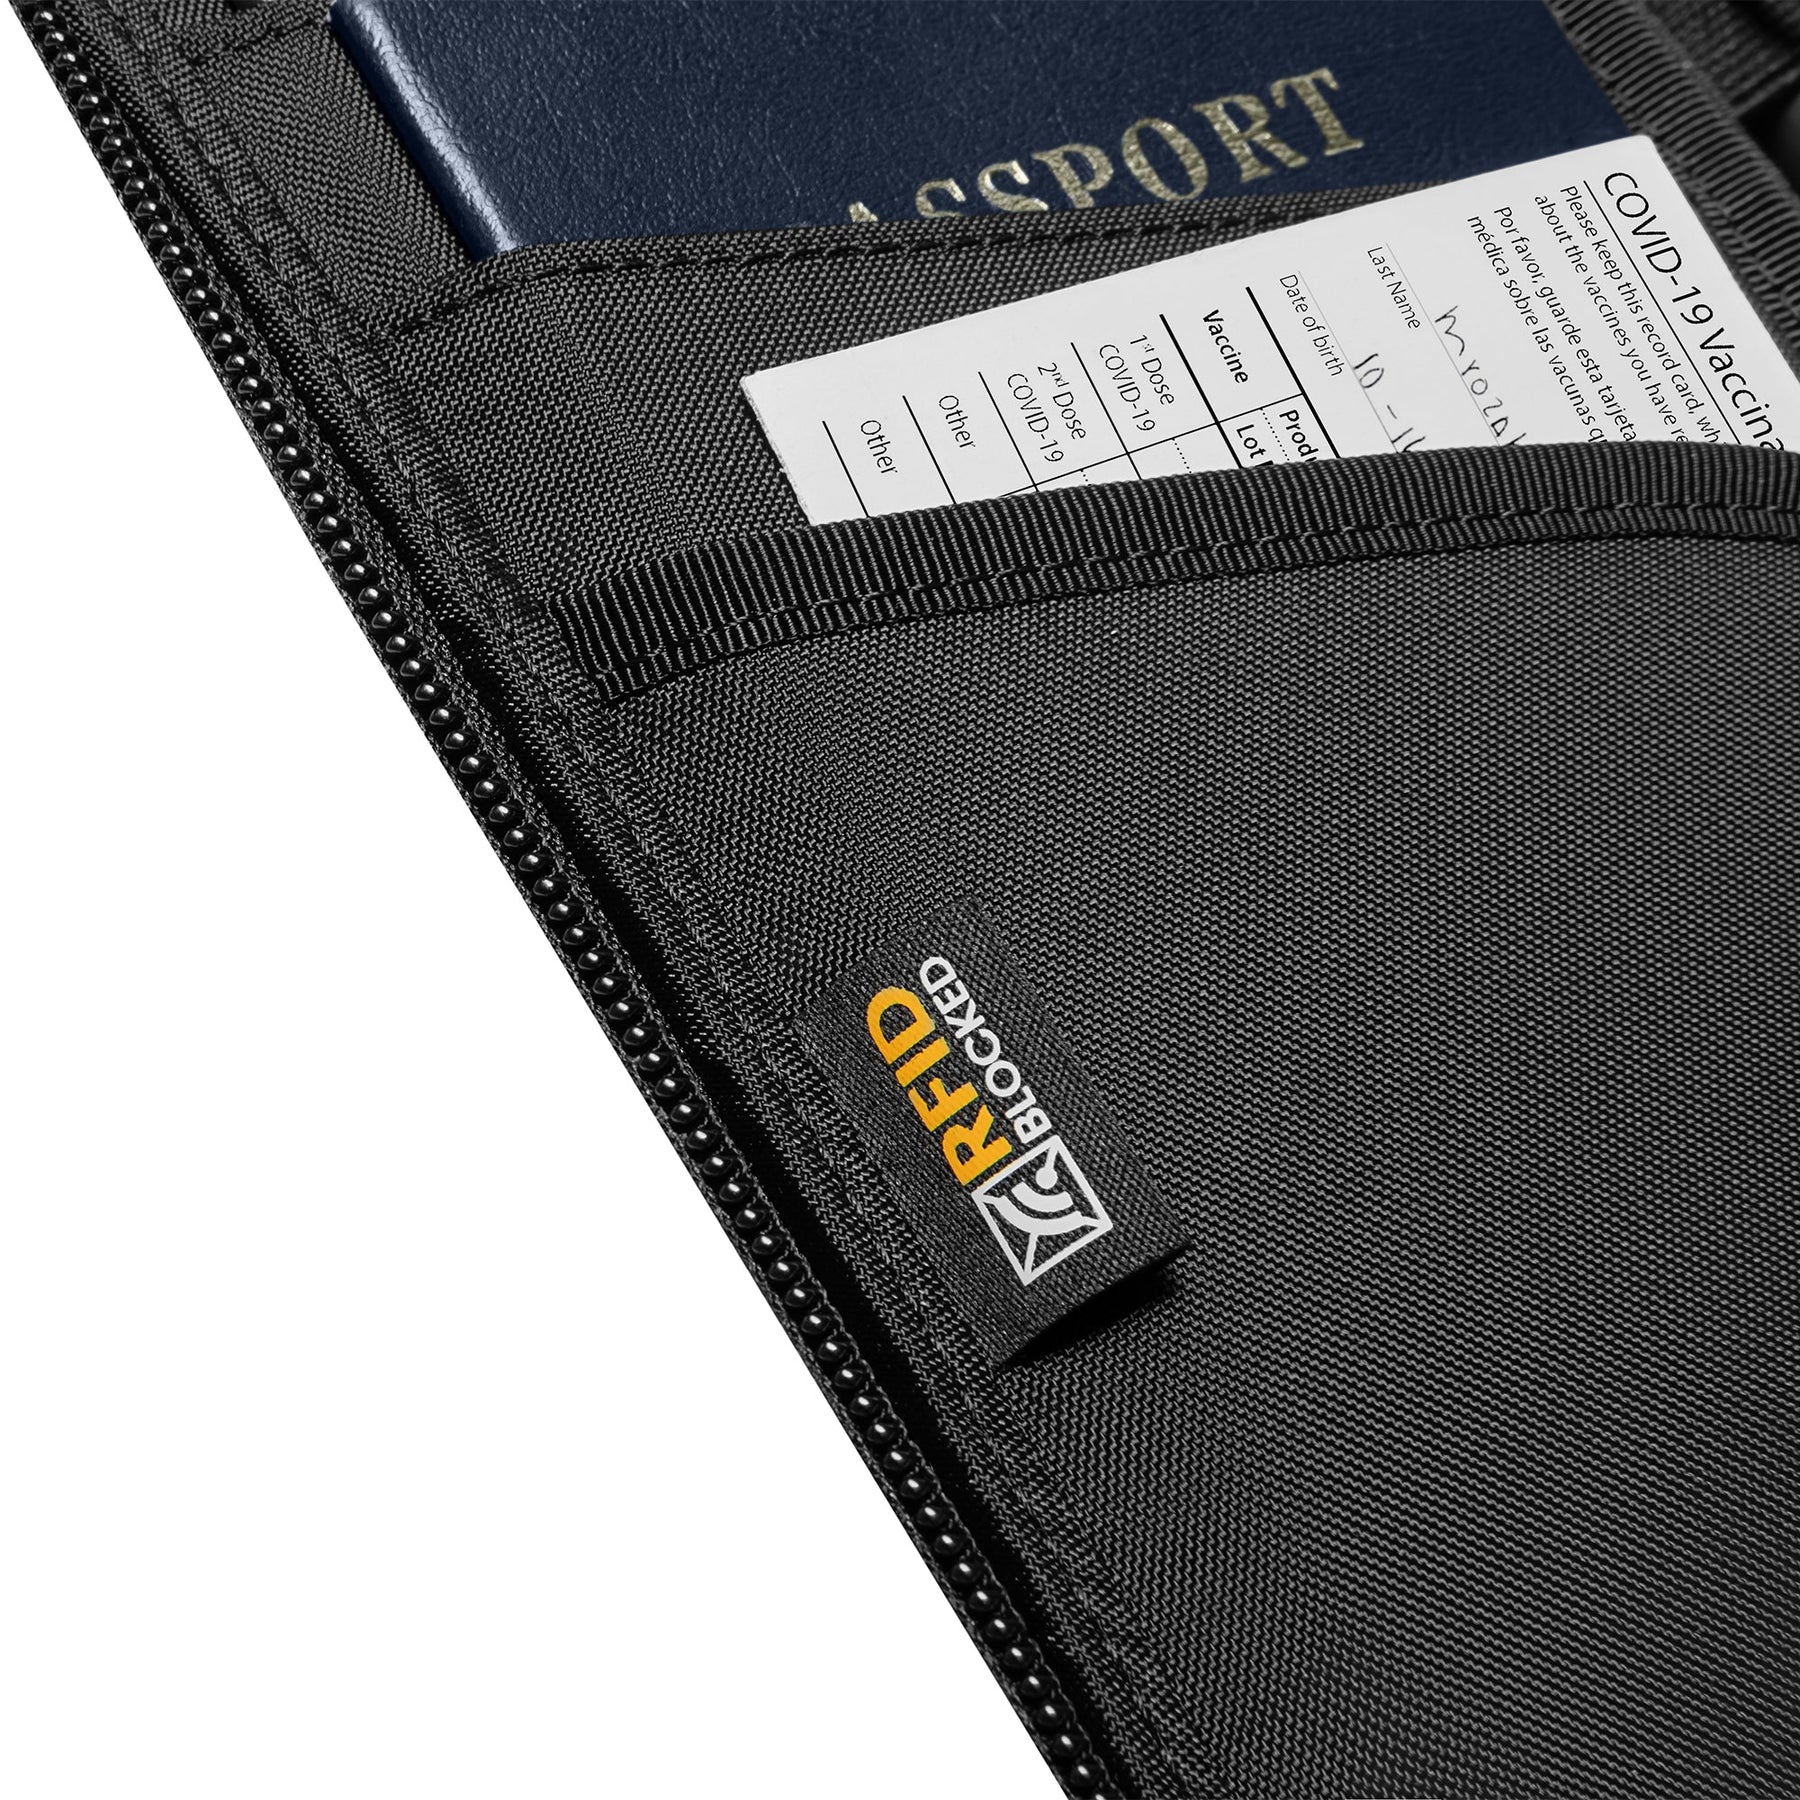 tomtoc Navigator Passport Holder / Passport Wallet / Travel Accessories - Black